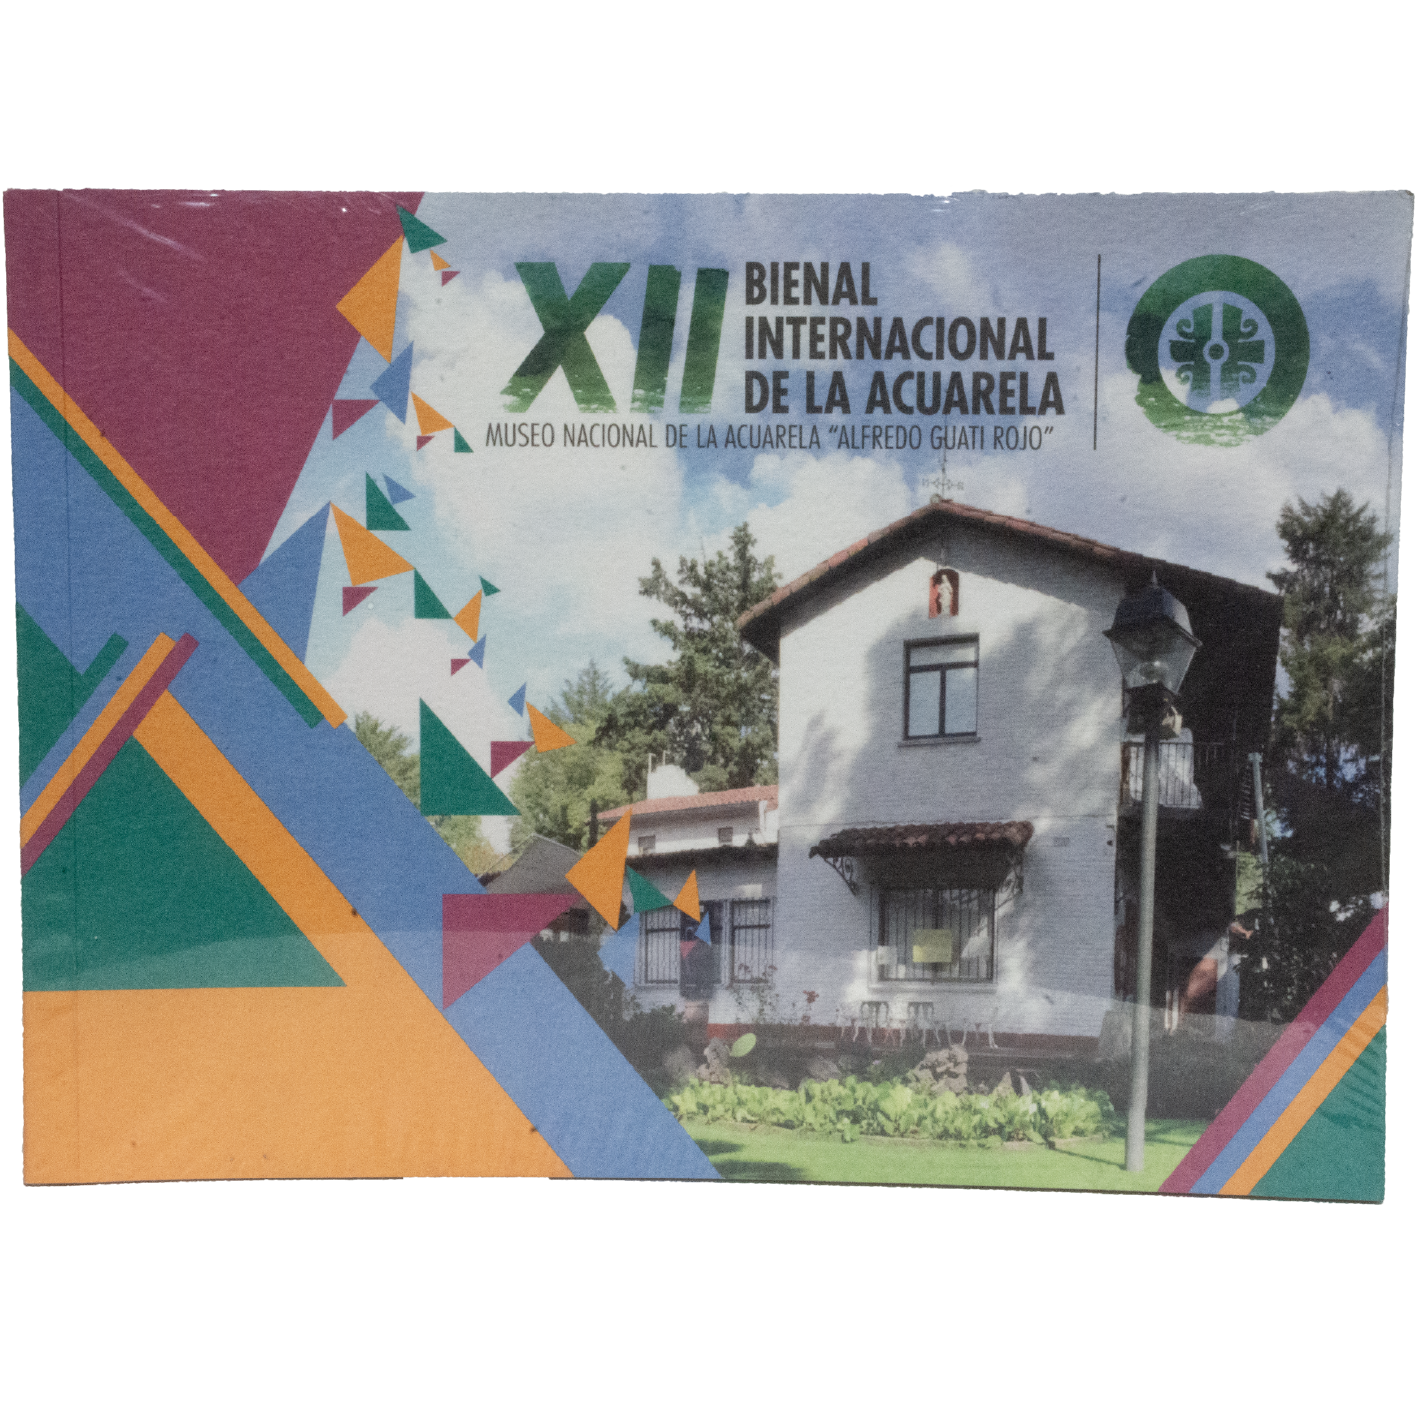 Catálogo XII Bienal Internacional de la Acuarela